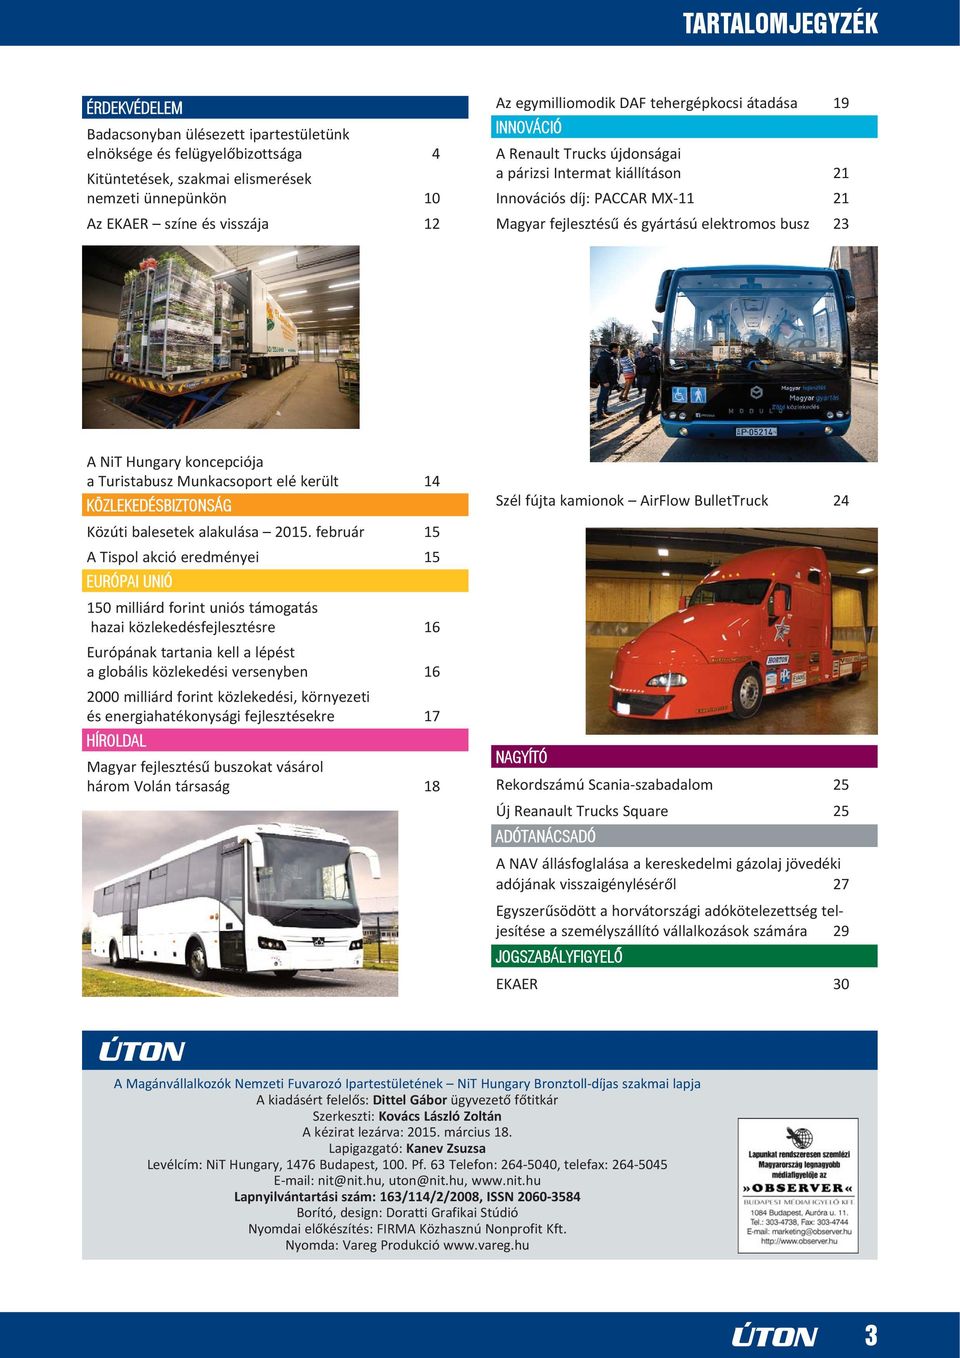 NiT Hungary koncepciója a Turistabusz Munkacsoport elé került 14 KÖZLEKEDÉSBIZTONSÁG Közúti balesetek alakulása 2015.